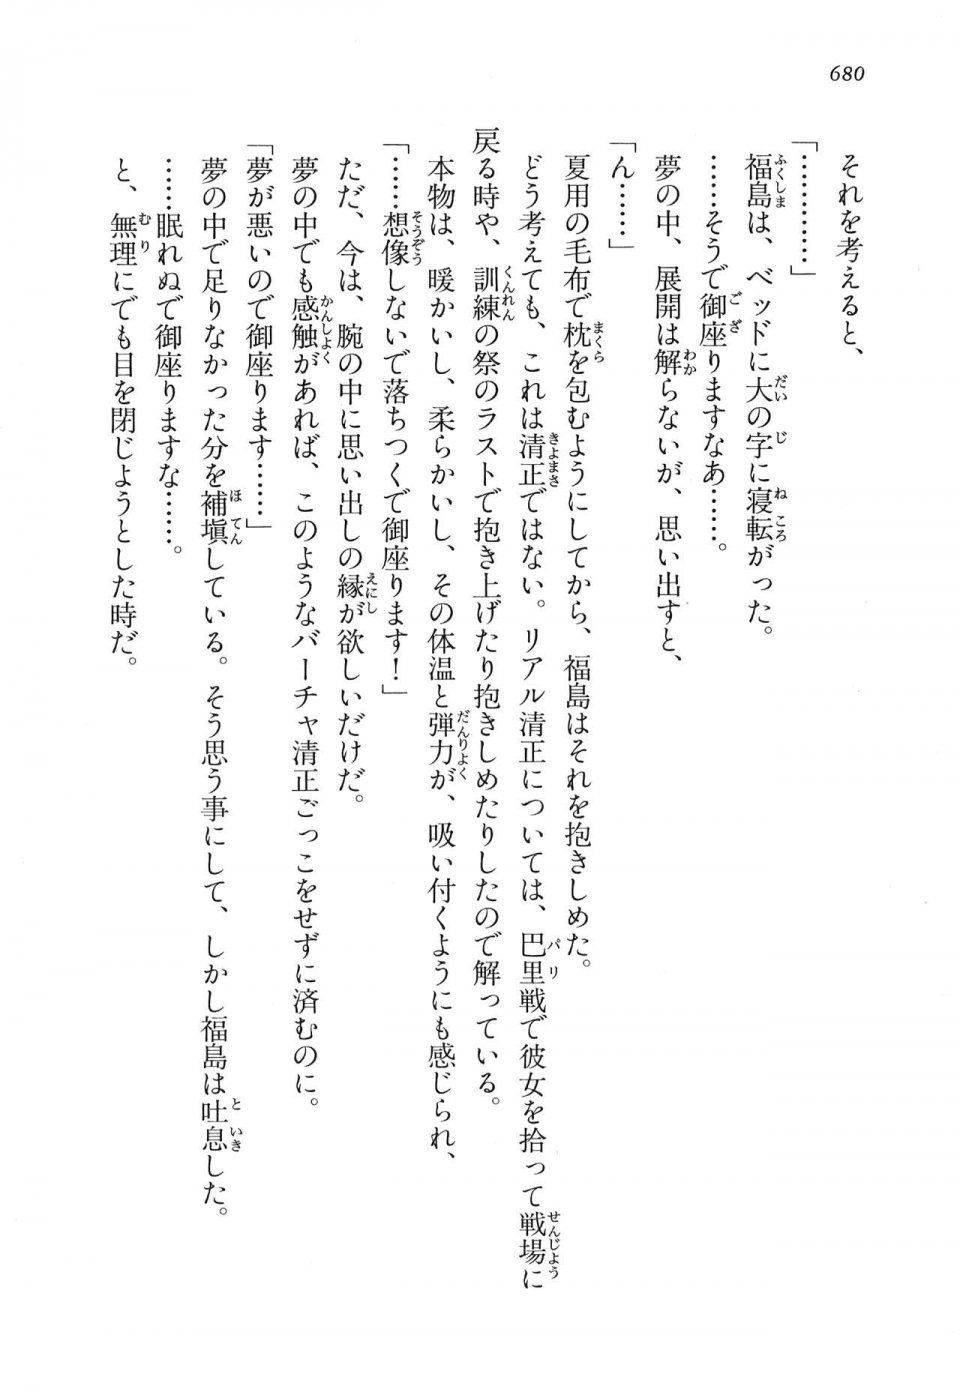 Kyoukai Senjou no Horizon LN Vol 16(7A) - Photo #680